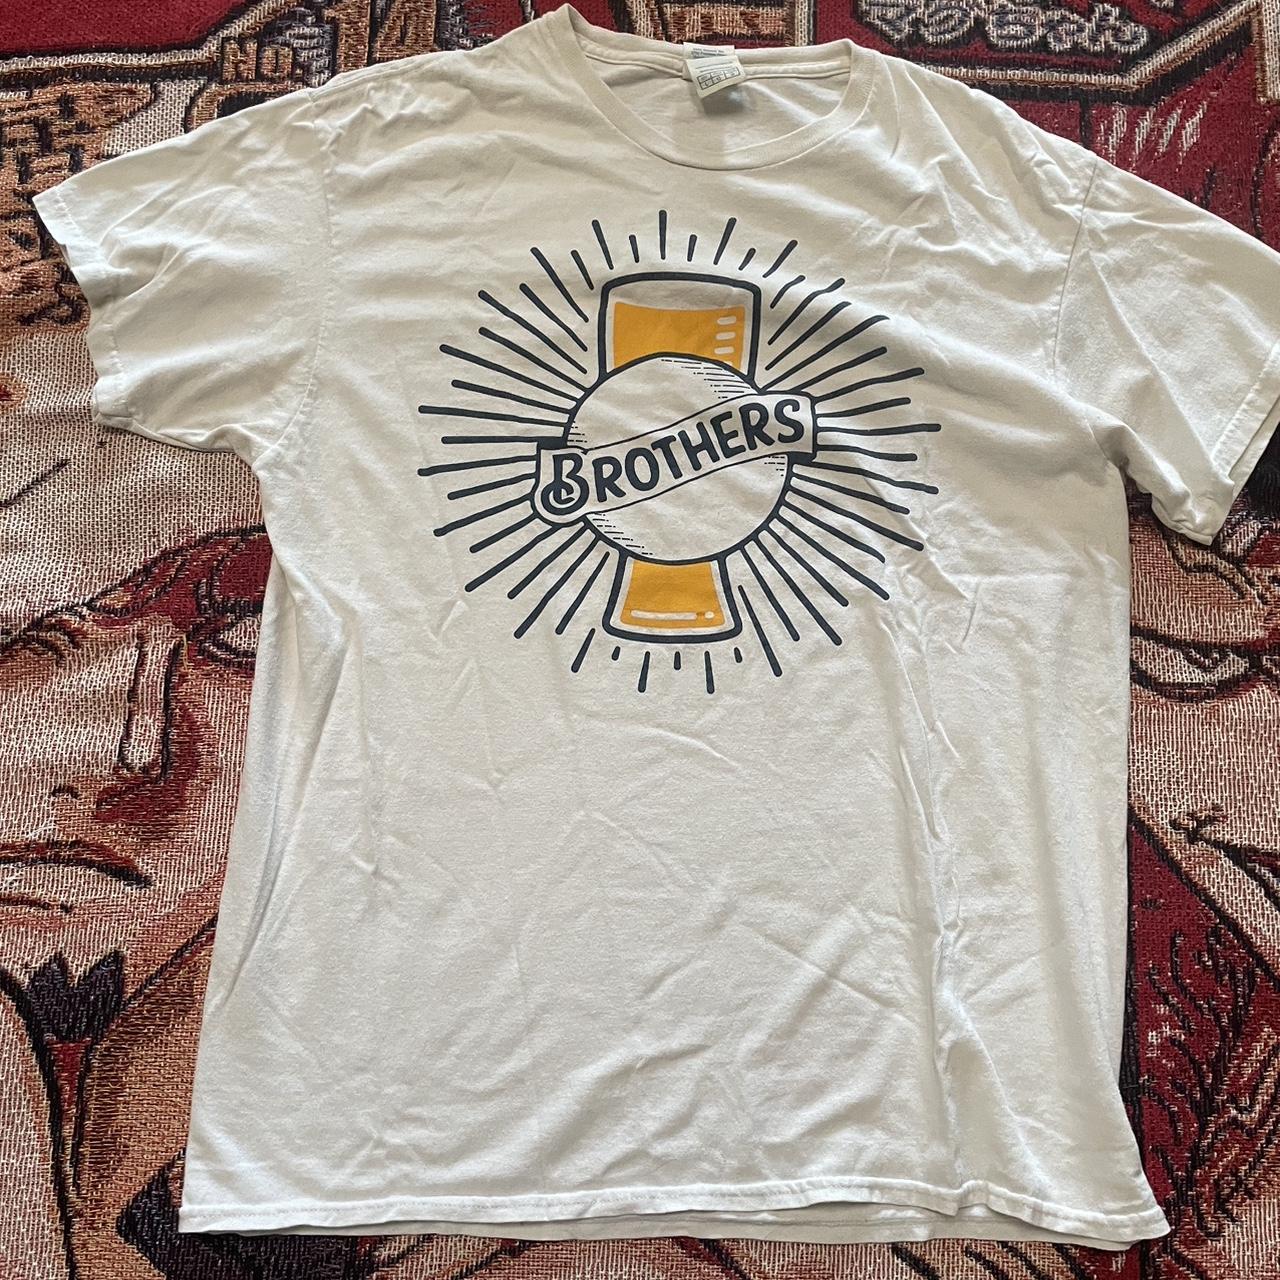 Vintage brothers beer tee shirt, Size: L, #vintage